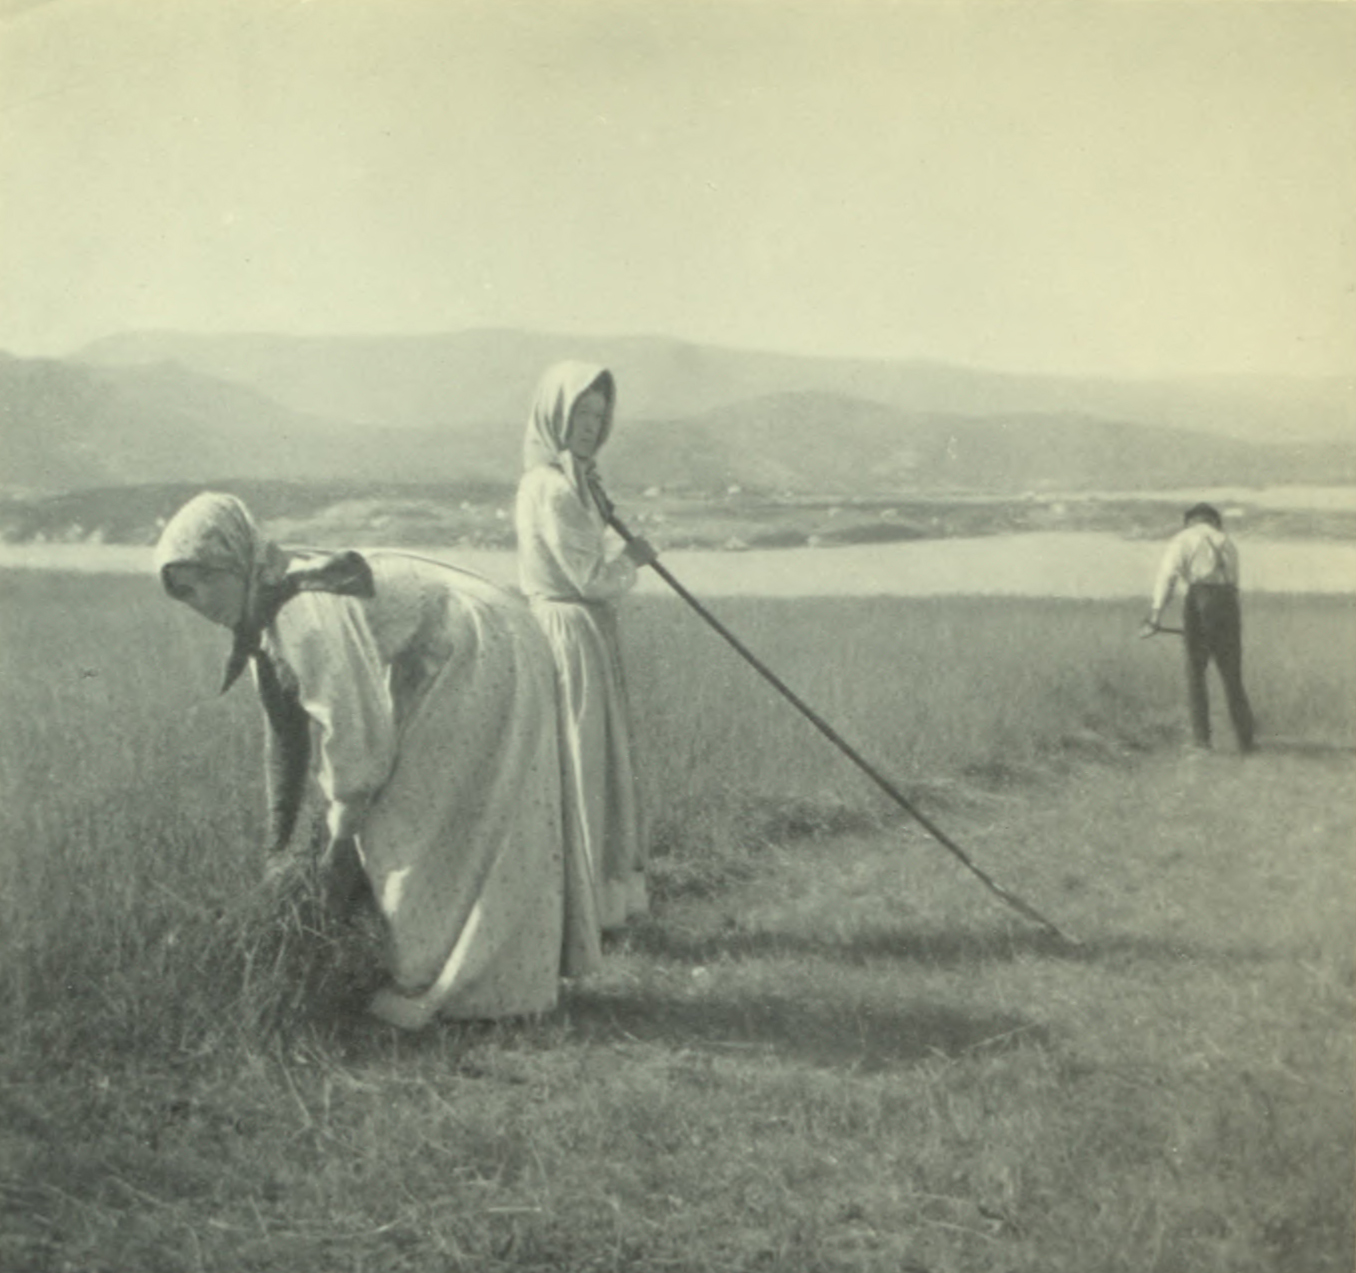 Two women working in the fields.